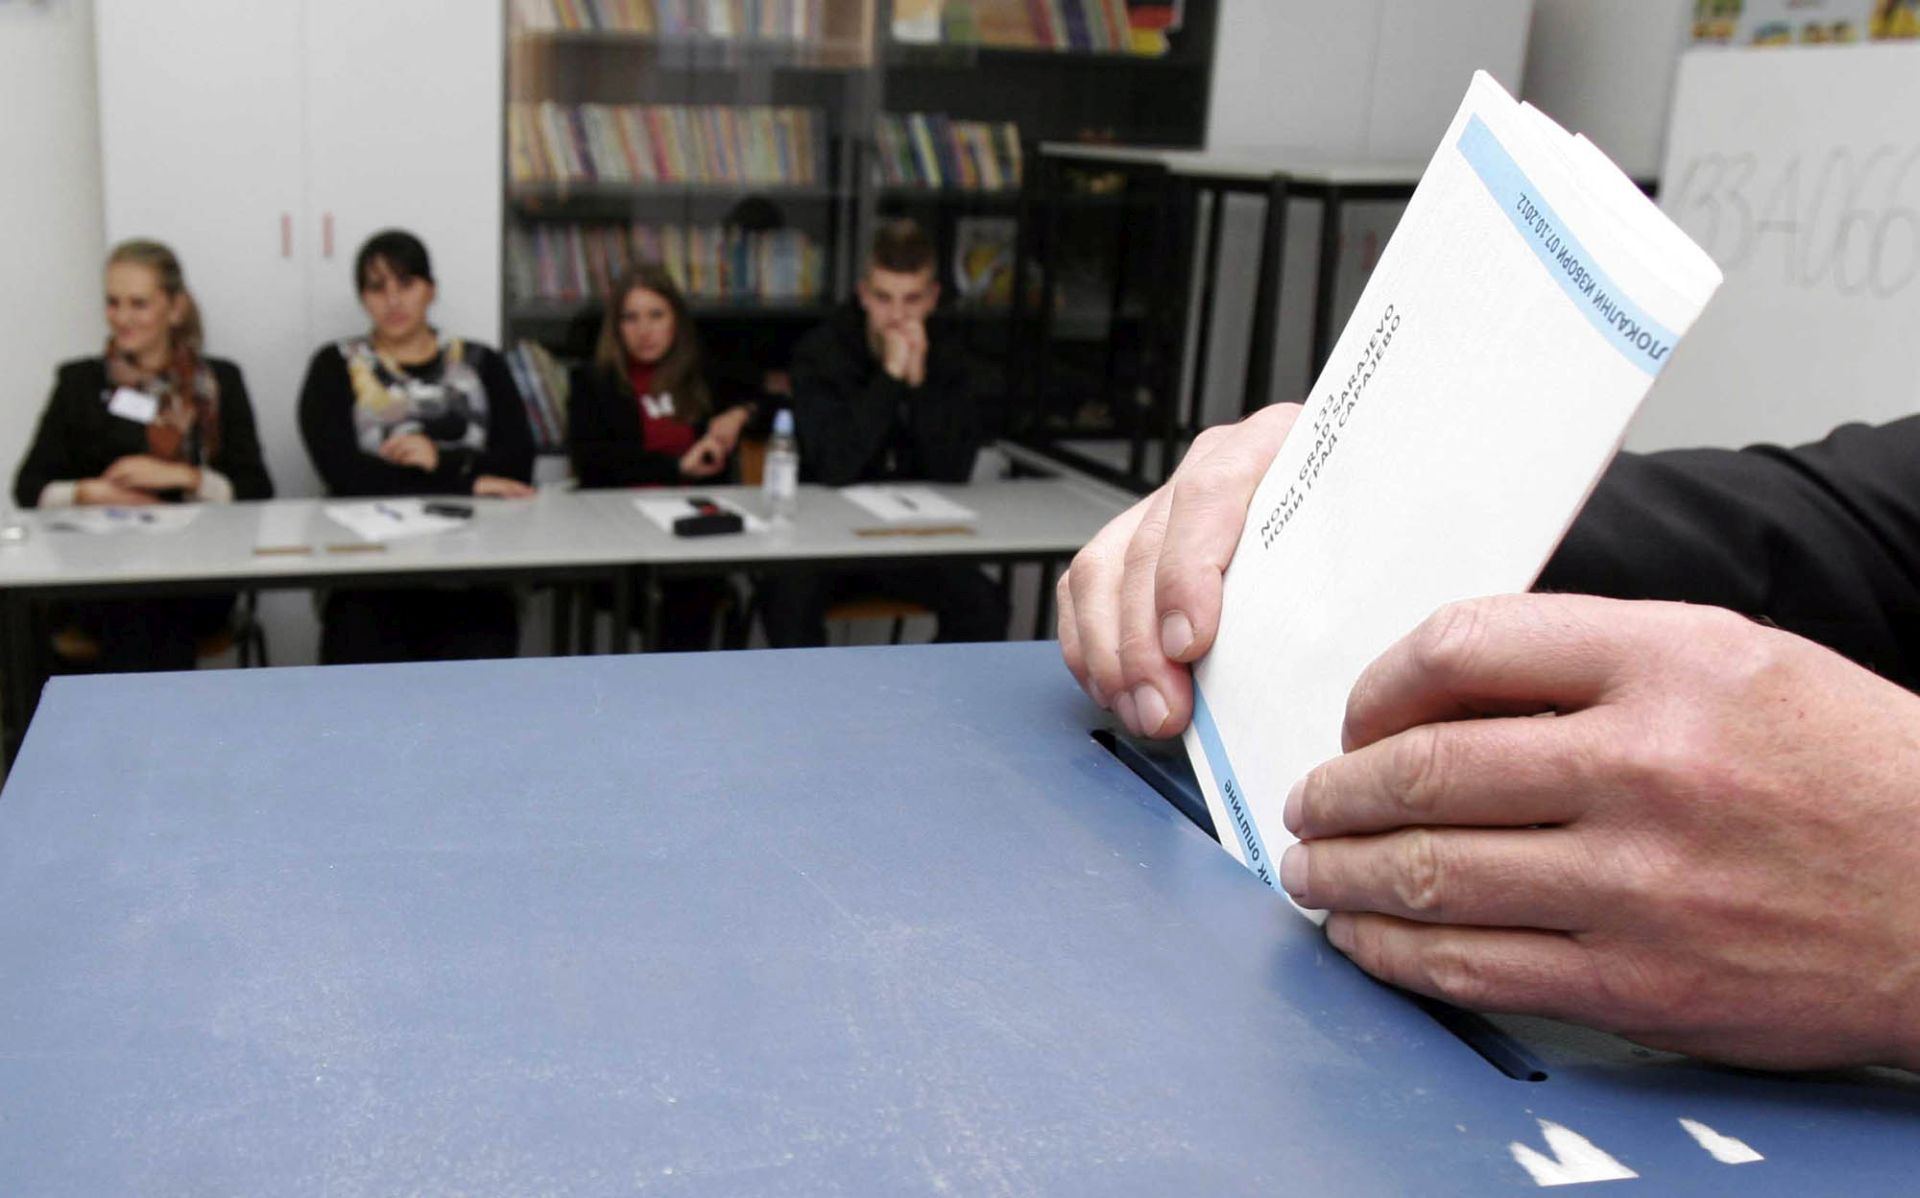 Sarajevo, 07.10.2012 -  U Bosni i Hercegovini u nedjelju su poèeli lokalni izbori na kojima graðani te zemlje biraju nove opæinske vlasti. Toèno u 7 sati otvoreno je pet tisuæa i 100 biraèkih mjesta na kojima æe se moæi glasovati do 19 sati. Neto vie od tri milijuna i 140 tisuæa registriranih biraèa imaju priliku odluèiti o buduæem sastavu 140 opæinskih i gradskih vijeæa te skuptine distrikta Brèko.
foto FaH/ FENA/ Emir Burloviæ/ ik